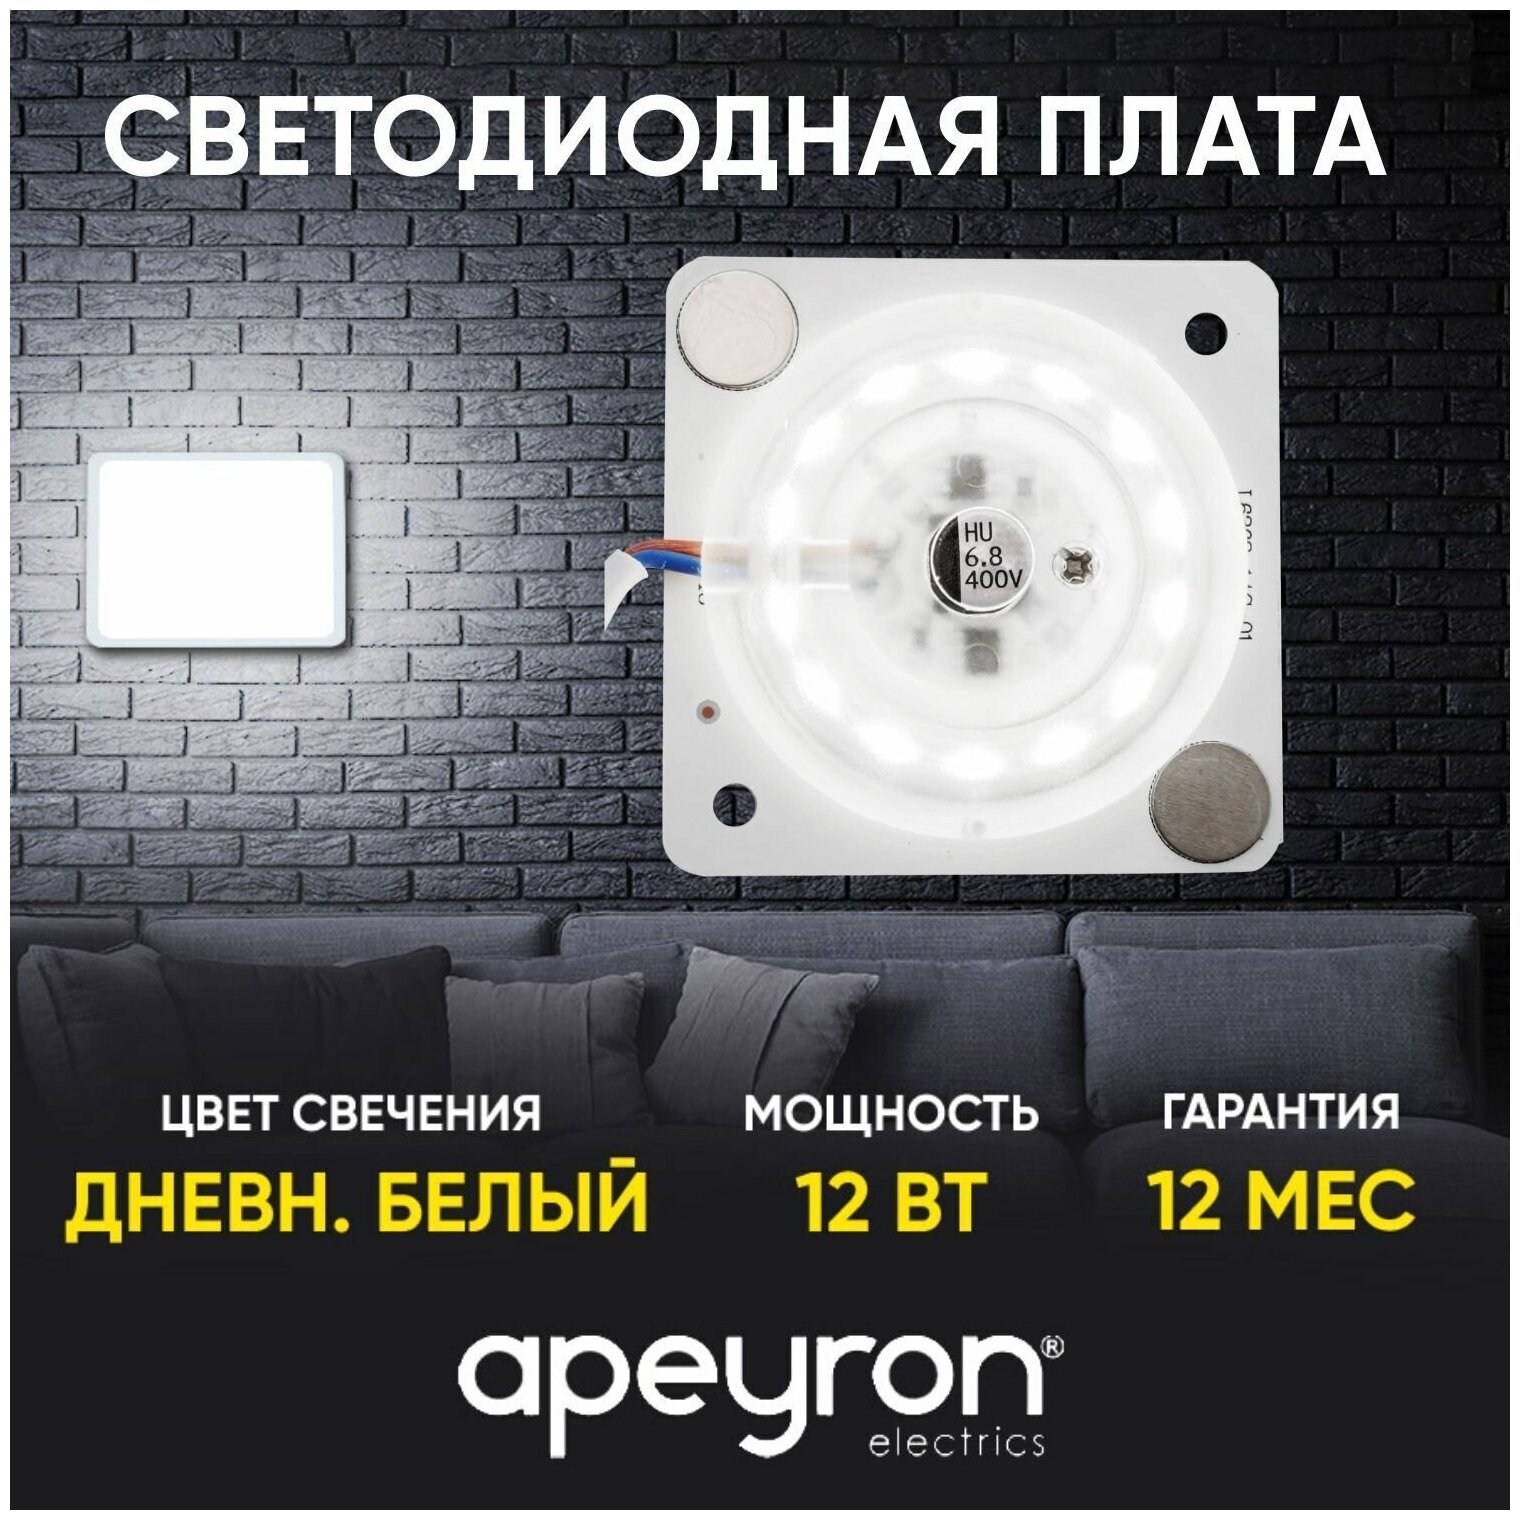 Плата светодиодная для интерьерного света Apeyron 02-13 мощностью 12 Ватт. Влагозащита IP20 цветовая температура 4000К световой поток 960Лм рабочее напряжение 220В размер 63х63 мм.